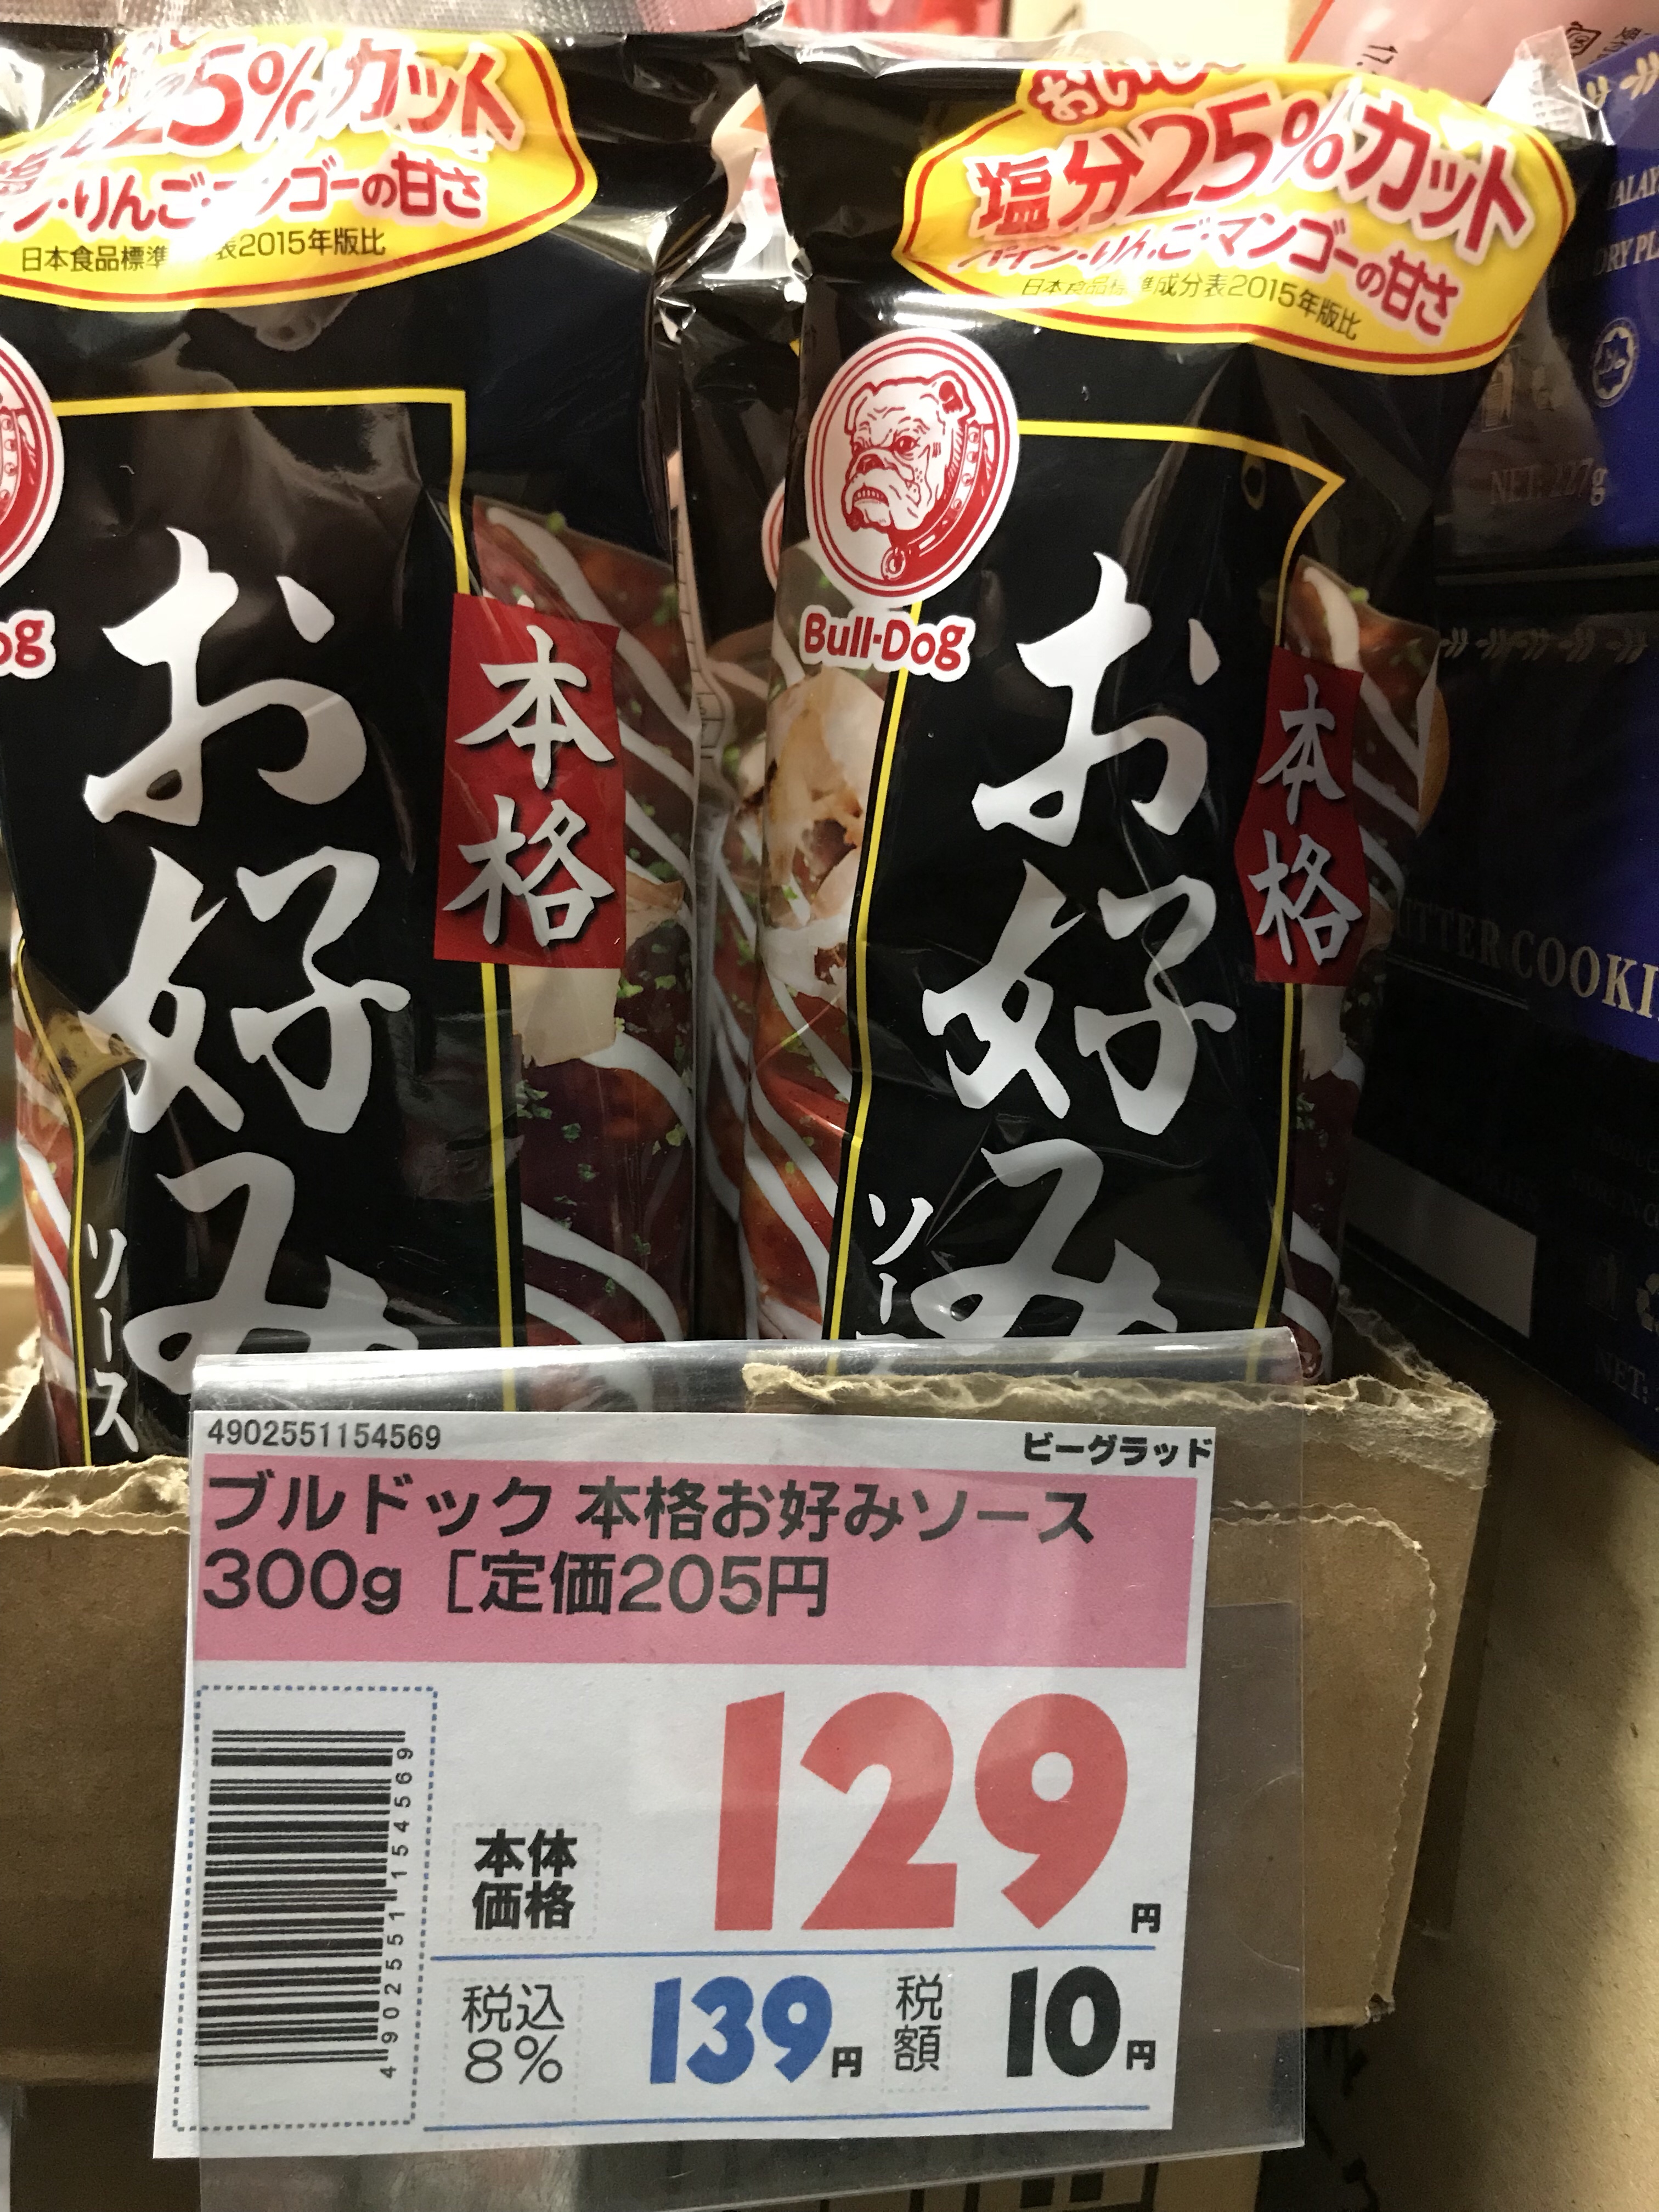 昭和 お好み焼き粉 200g 69円です。 | ビーグラッド